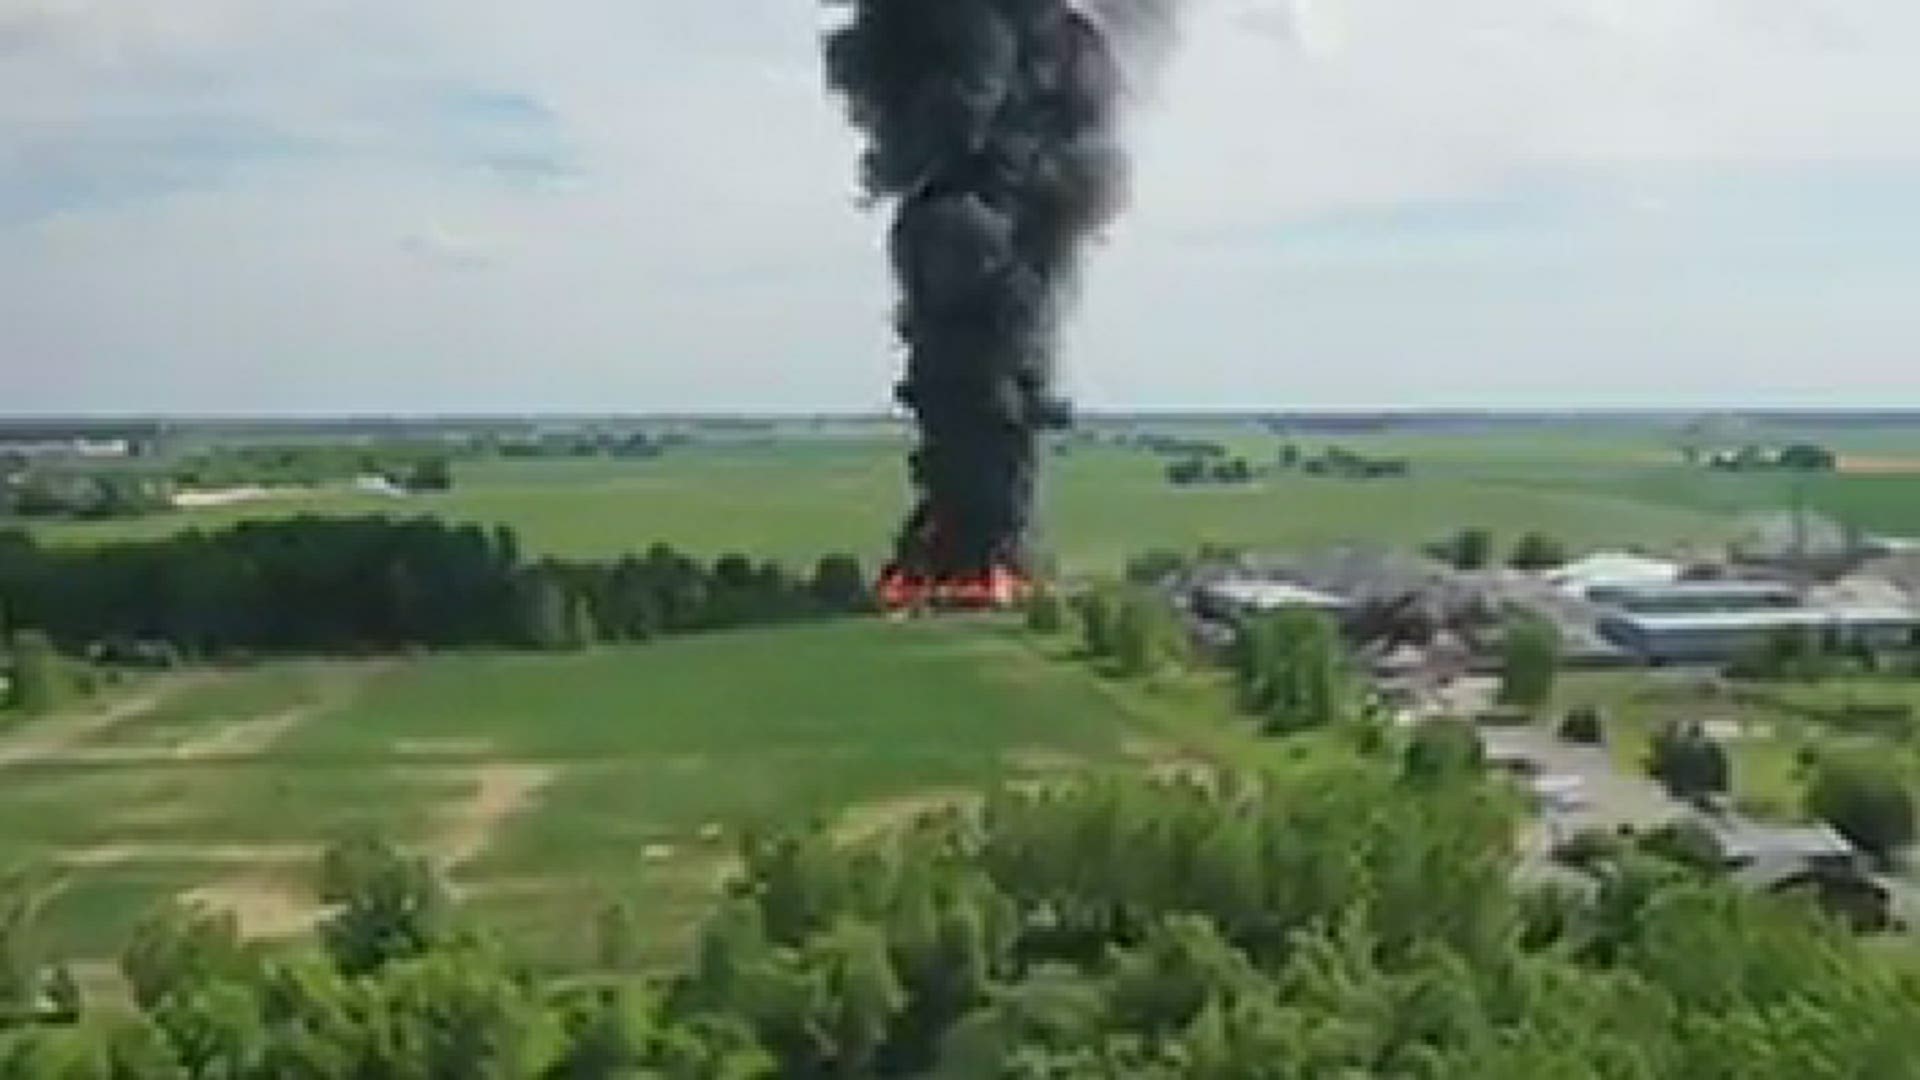 Courtesy of Jesse Teynor, drone video of the Dlubak Glass fire in Upper Sandusky.